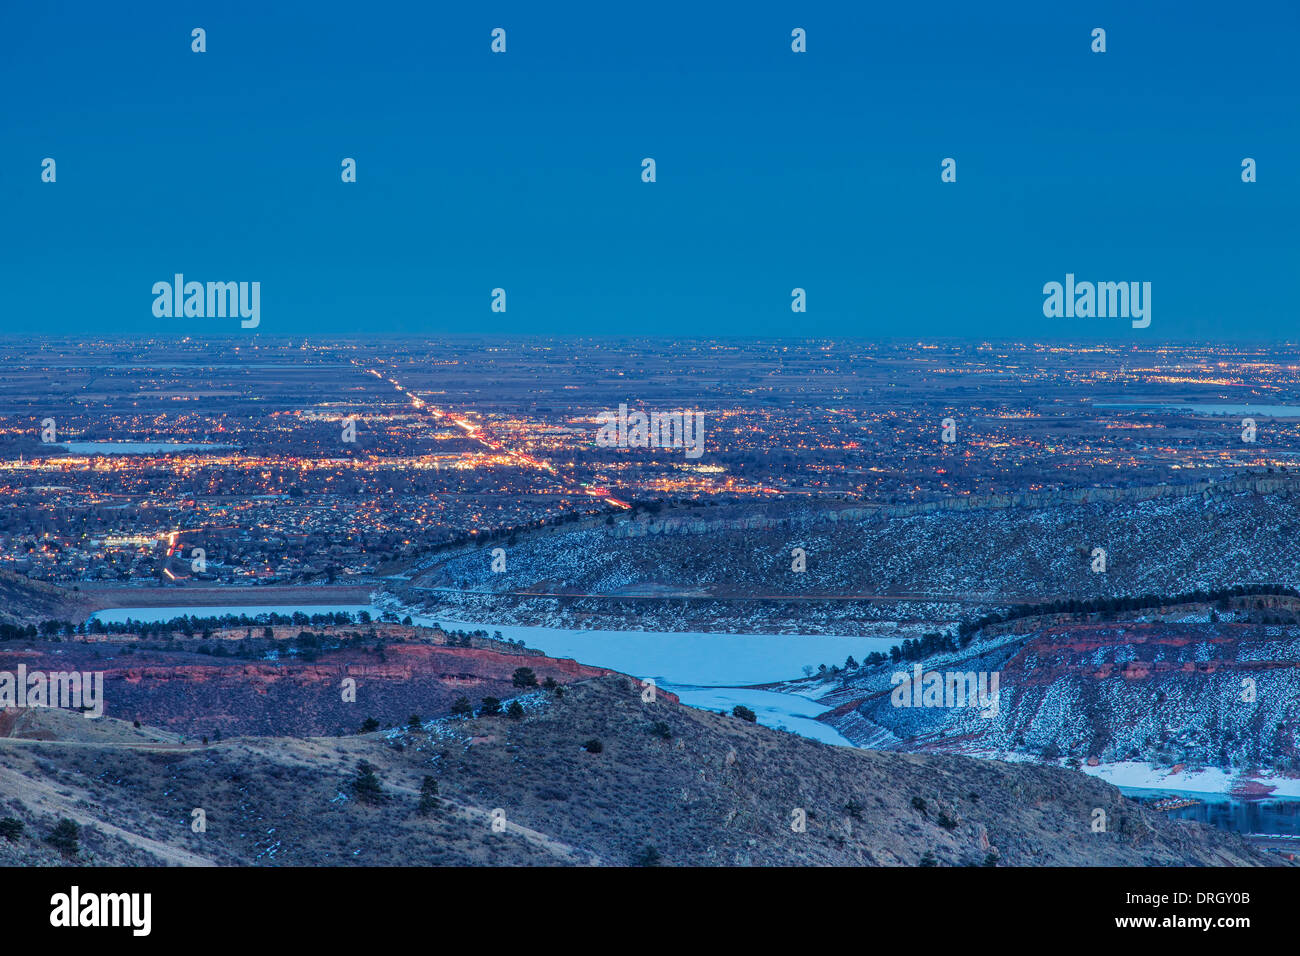 Vue de nuit de Fort Collins au Colorado avec Foothills et Horsetooth Reservoir, paysage d'hiver Banque D'Images